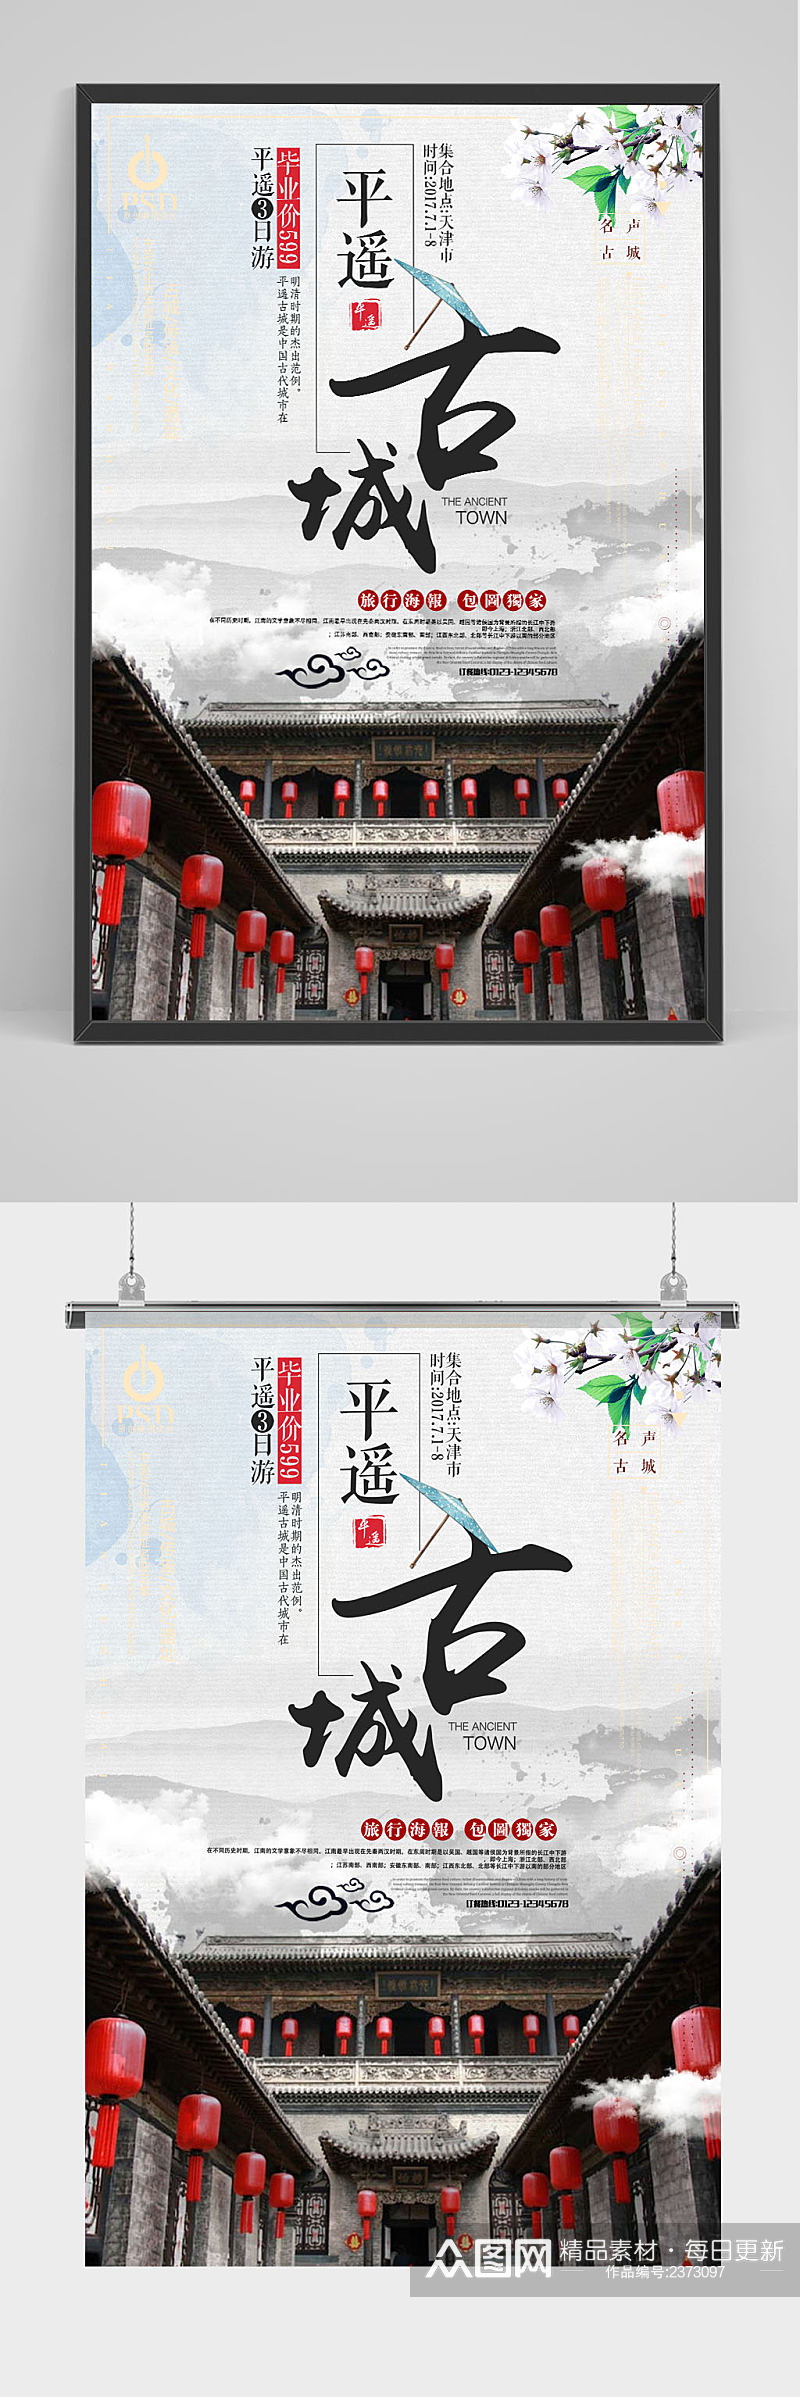 简约中国风平遥古城宣传海报设计素材